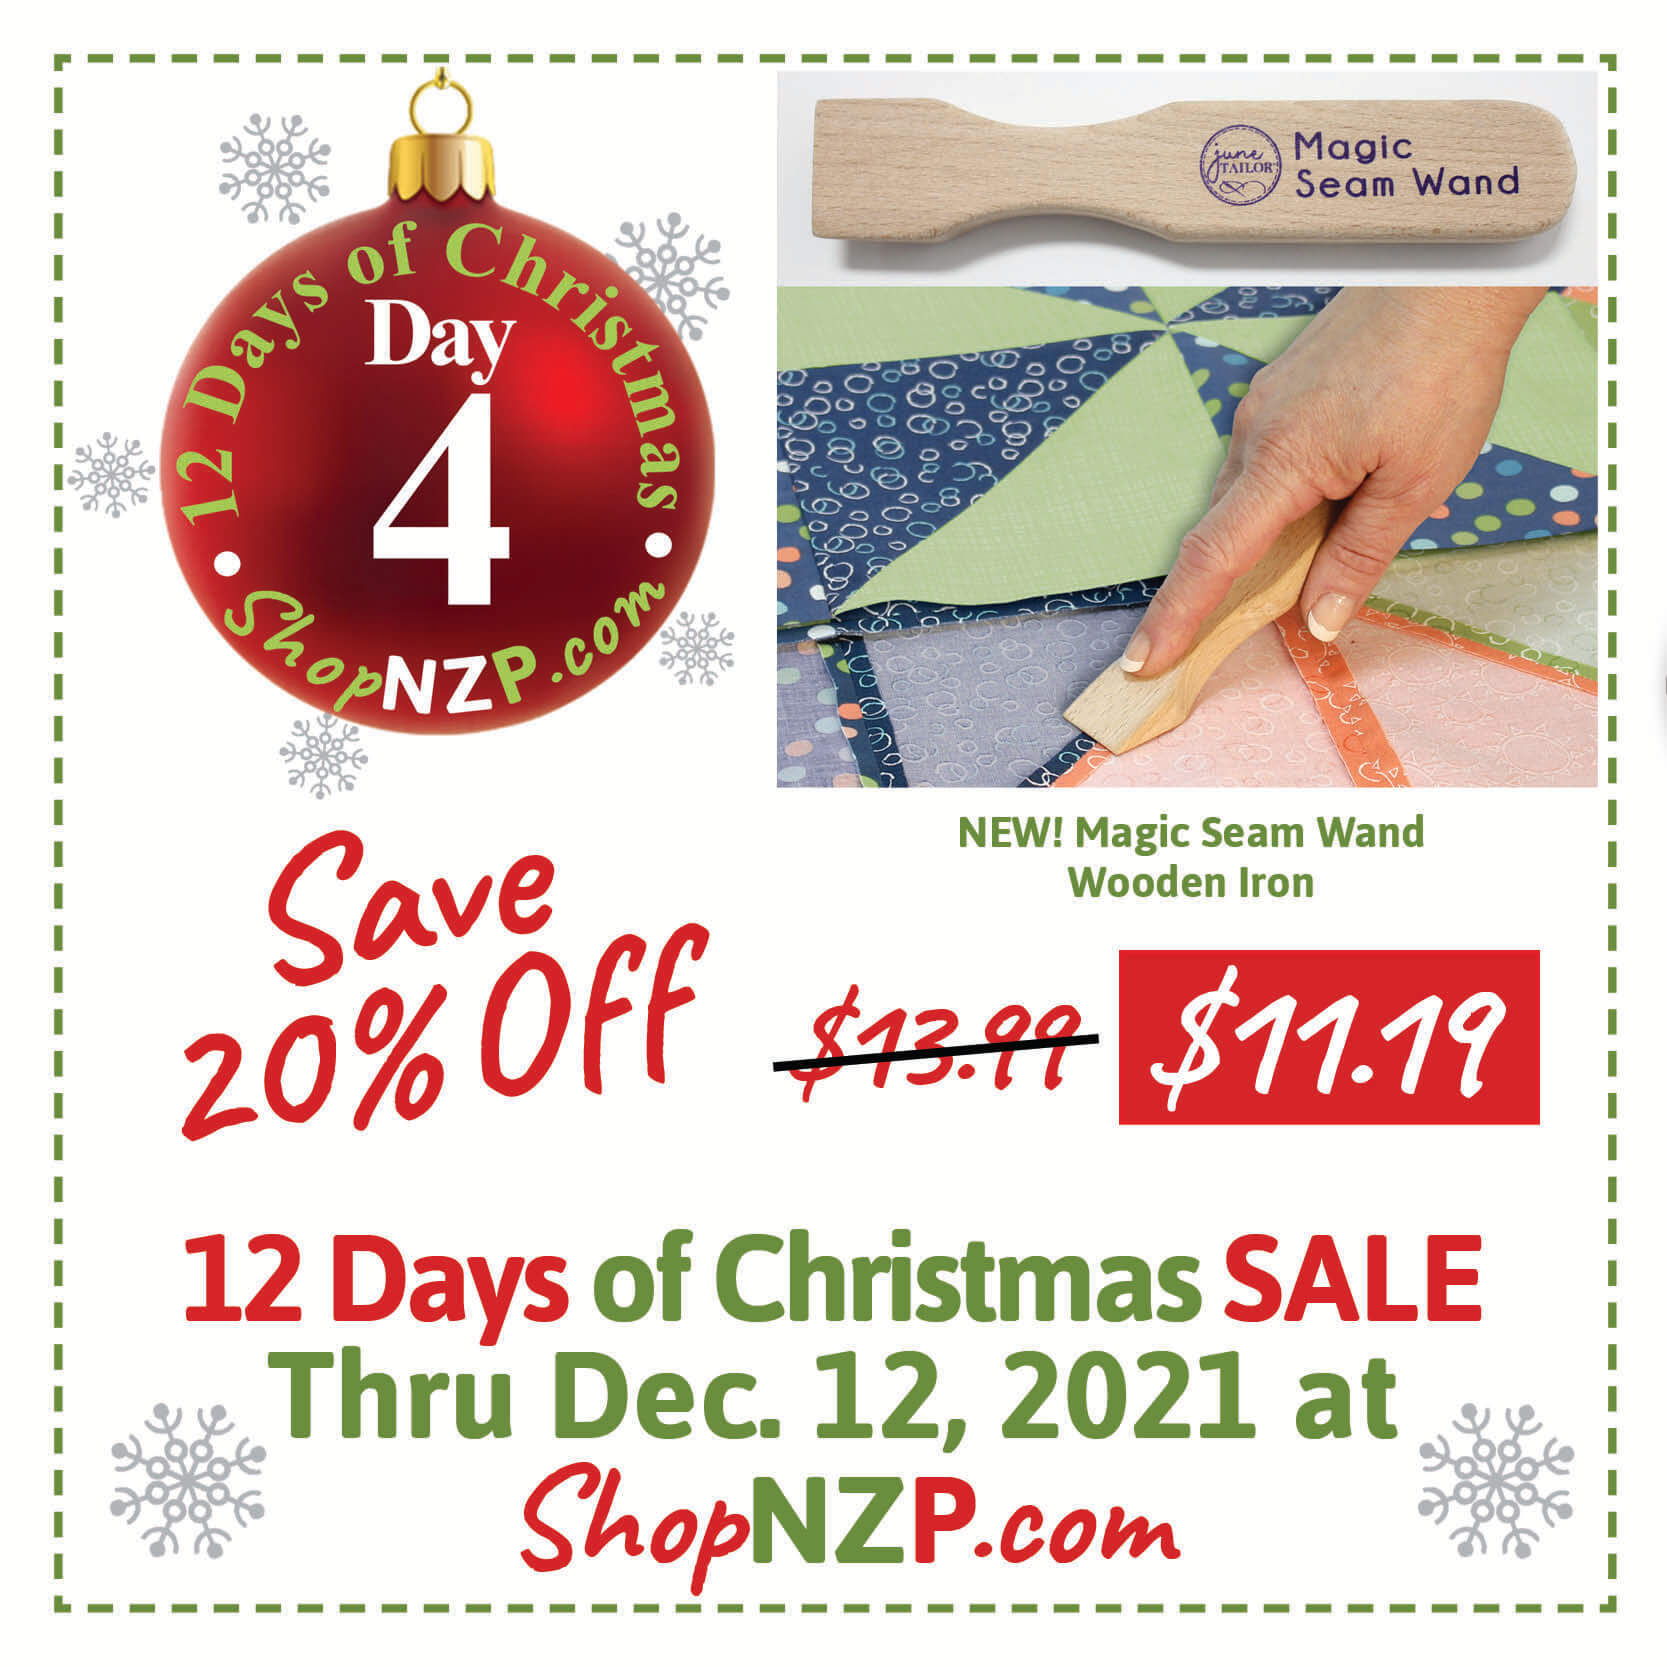 Save 20% Off Magic Seam Wand at Nancy Zieman Productions at ShopNZP.com Sale Dec 1-12, 2021